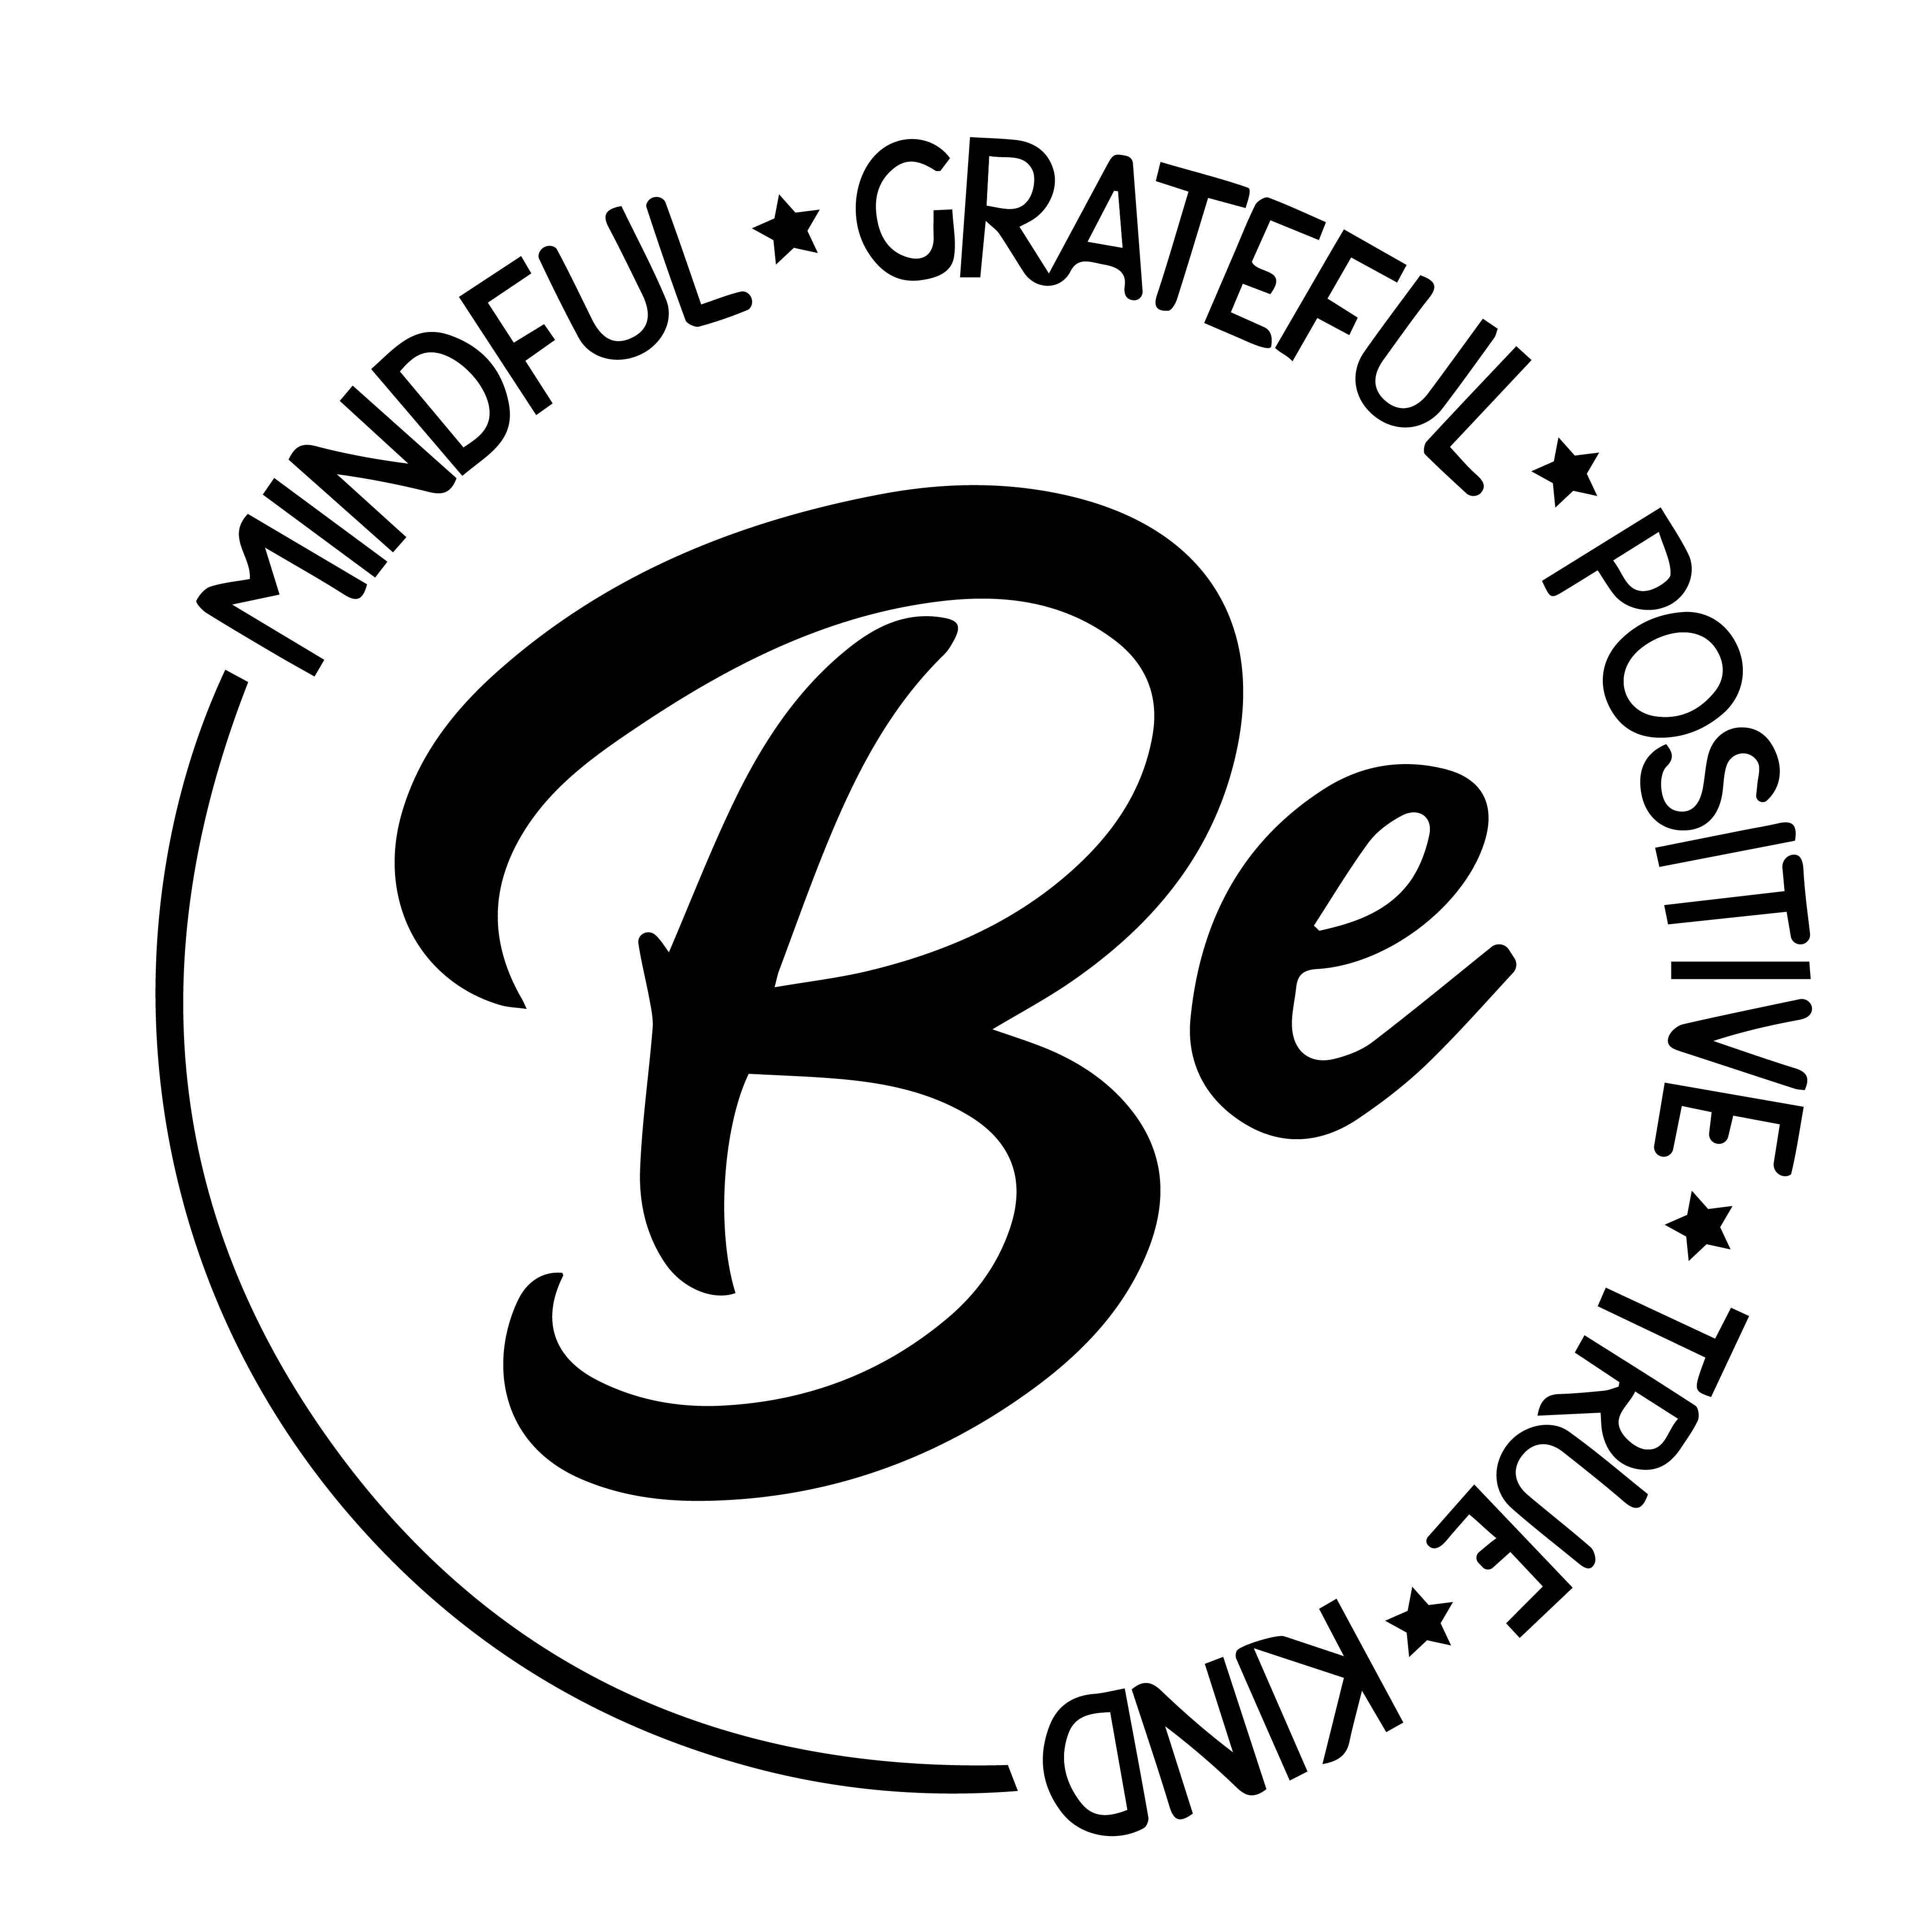 BE Mindful Grateful Positive True Kind - Design ( SVG - EPS - PNG =JPG ) Included preview image.